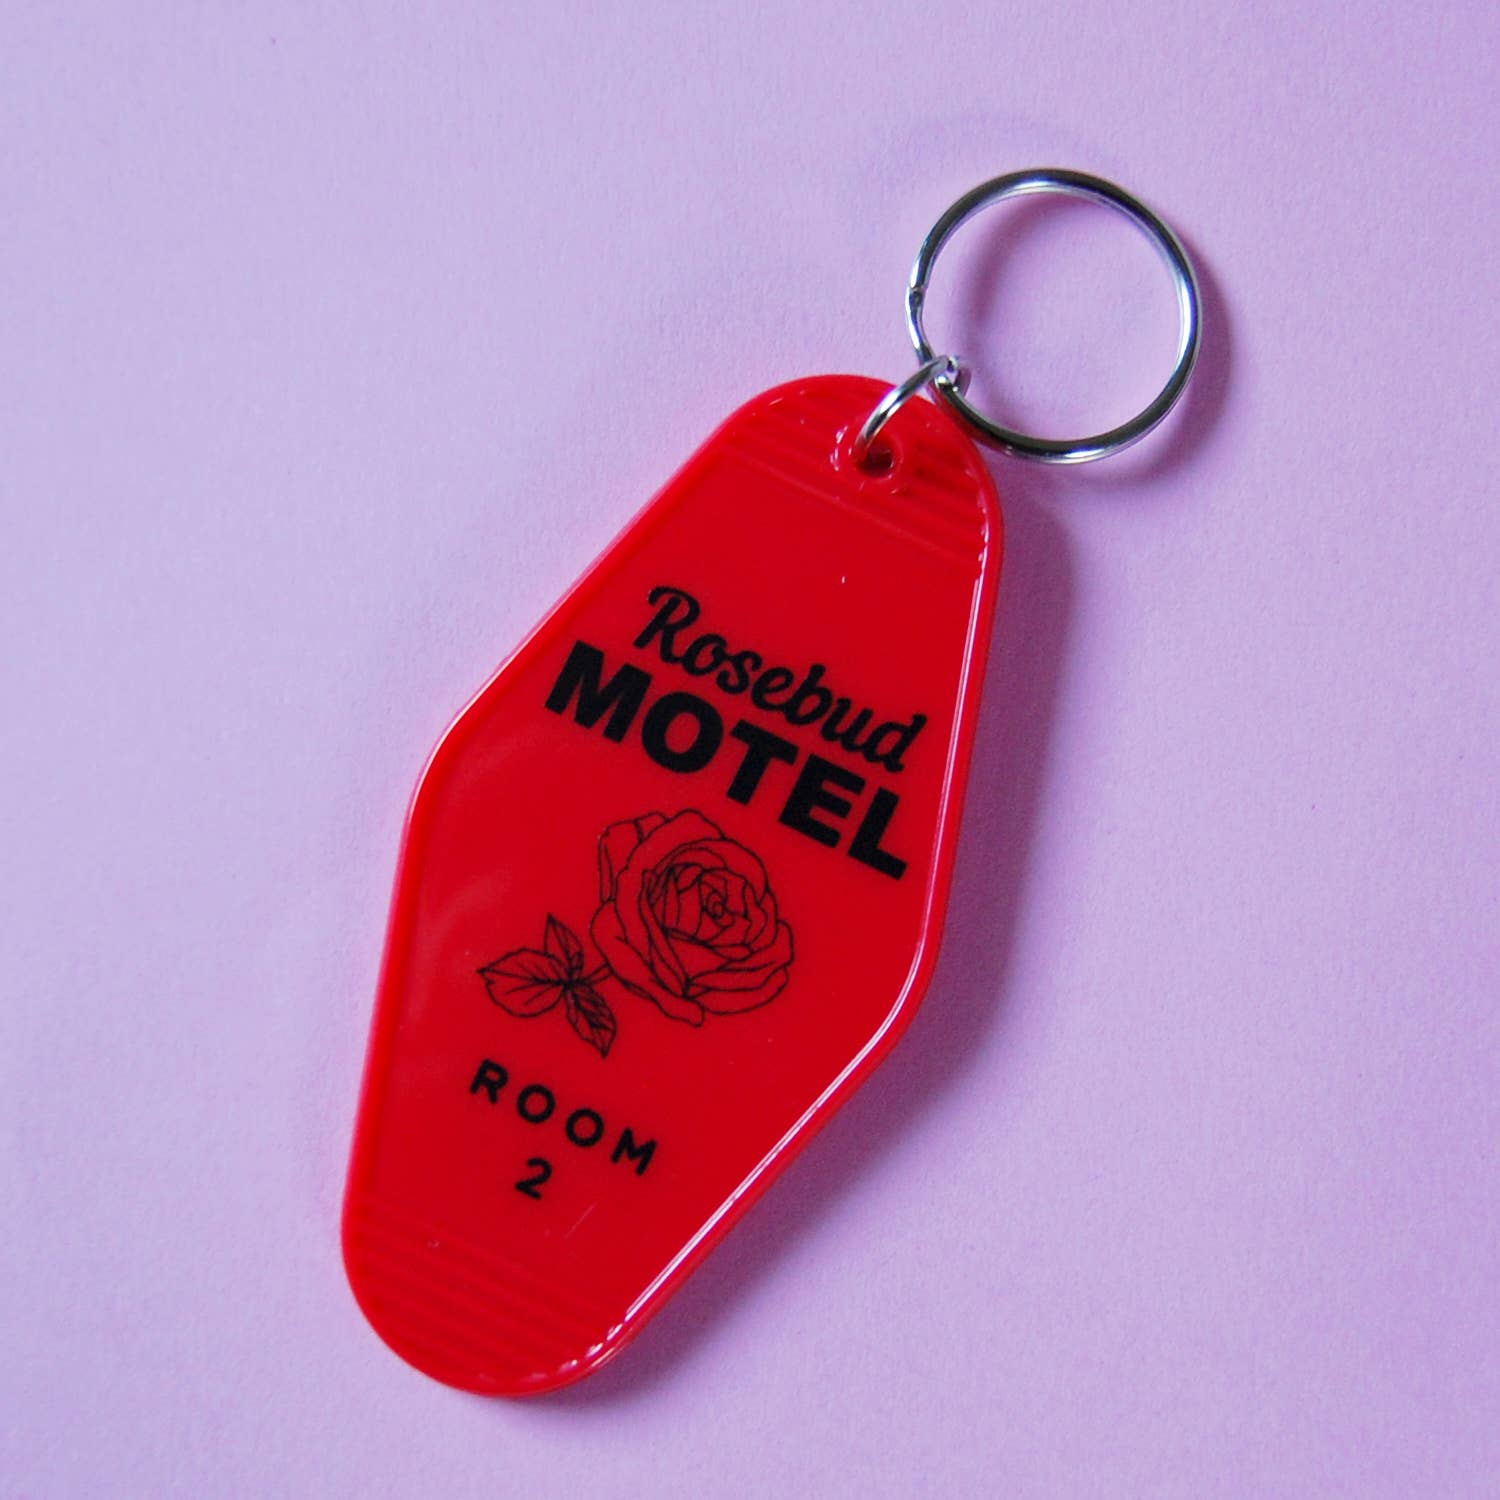 Rosebud Motel keychain - Schitt's Creek motel key fob